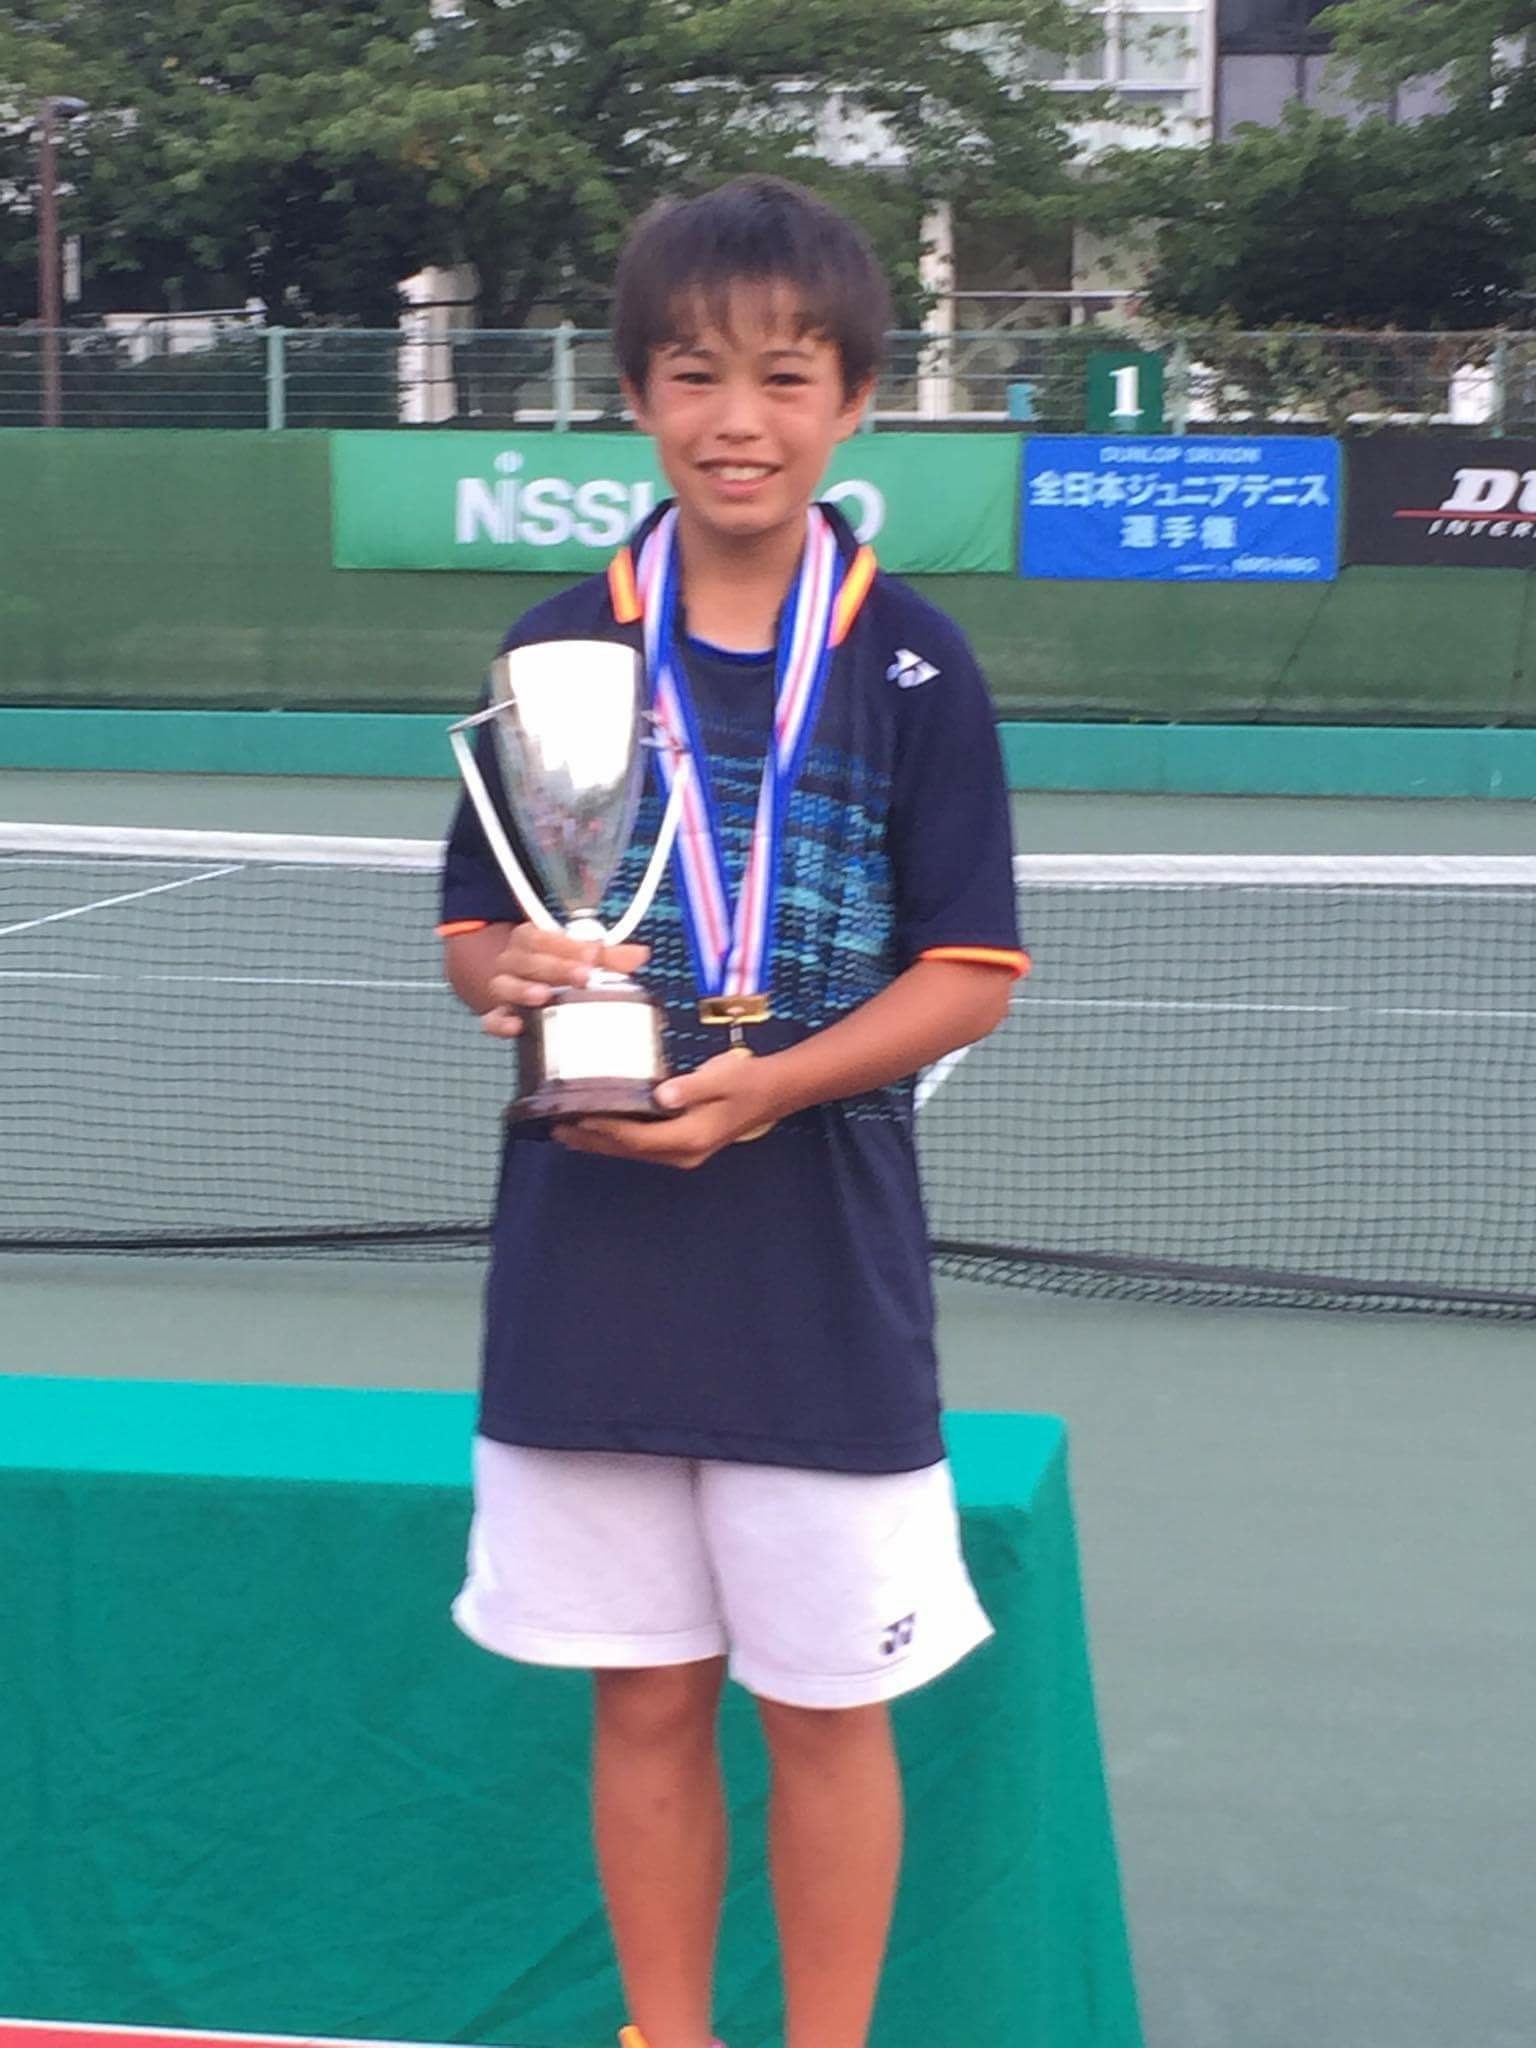 全日本ジュニア12歳以下優勝 ジョーンズ怜音の強さの秘密 見守ってきたテニス道 Tennis Jp テニス ドット ジェイピー